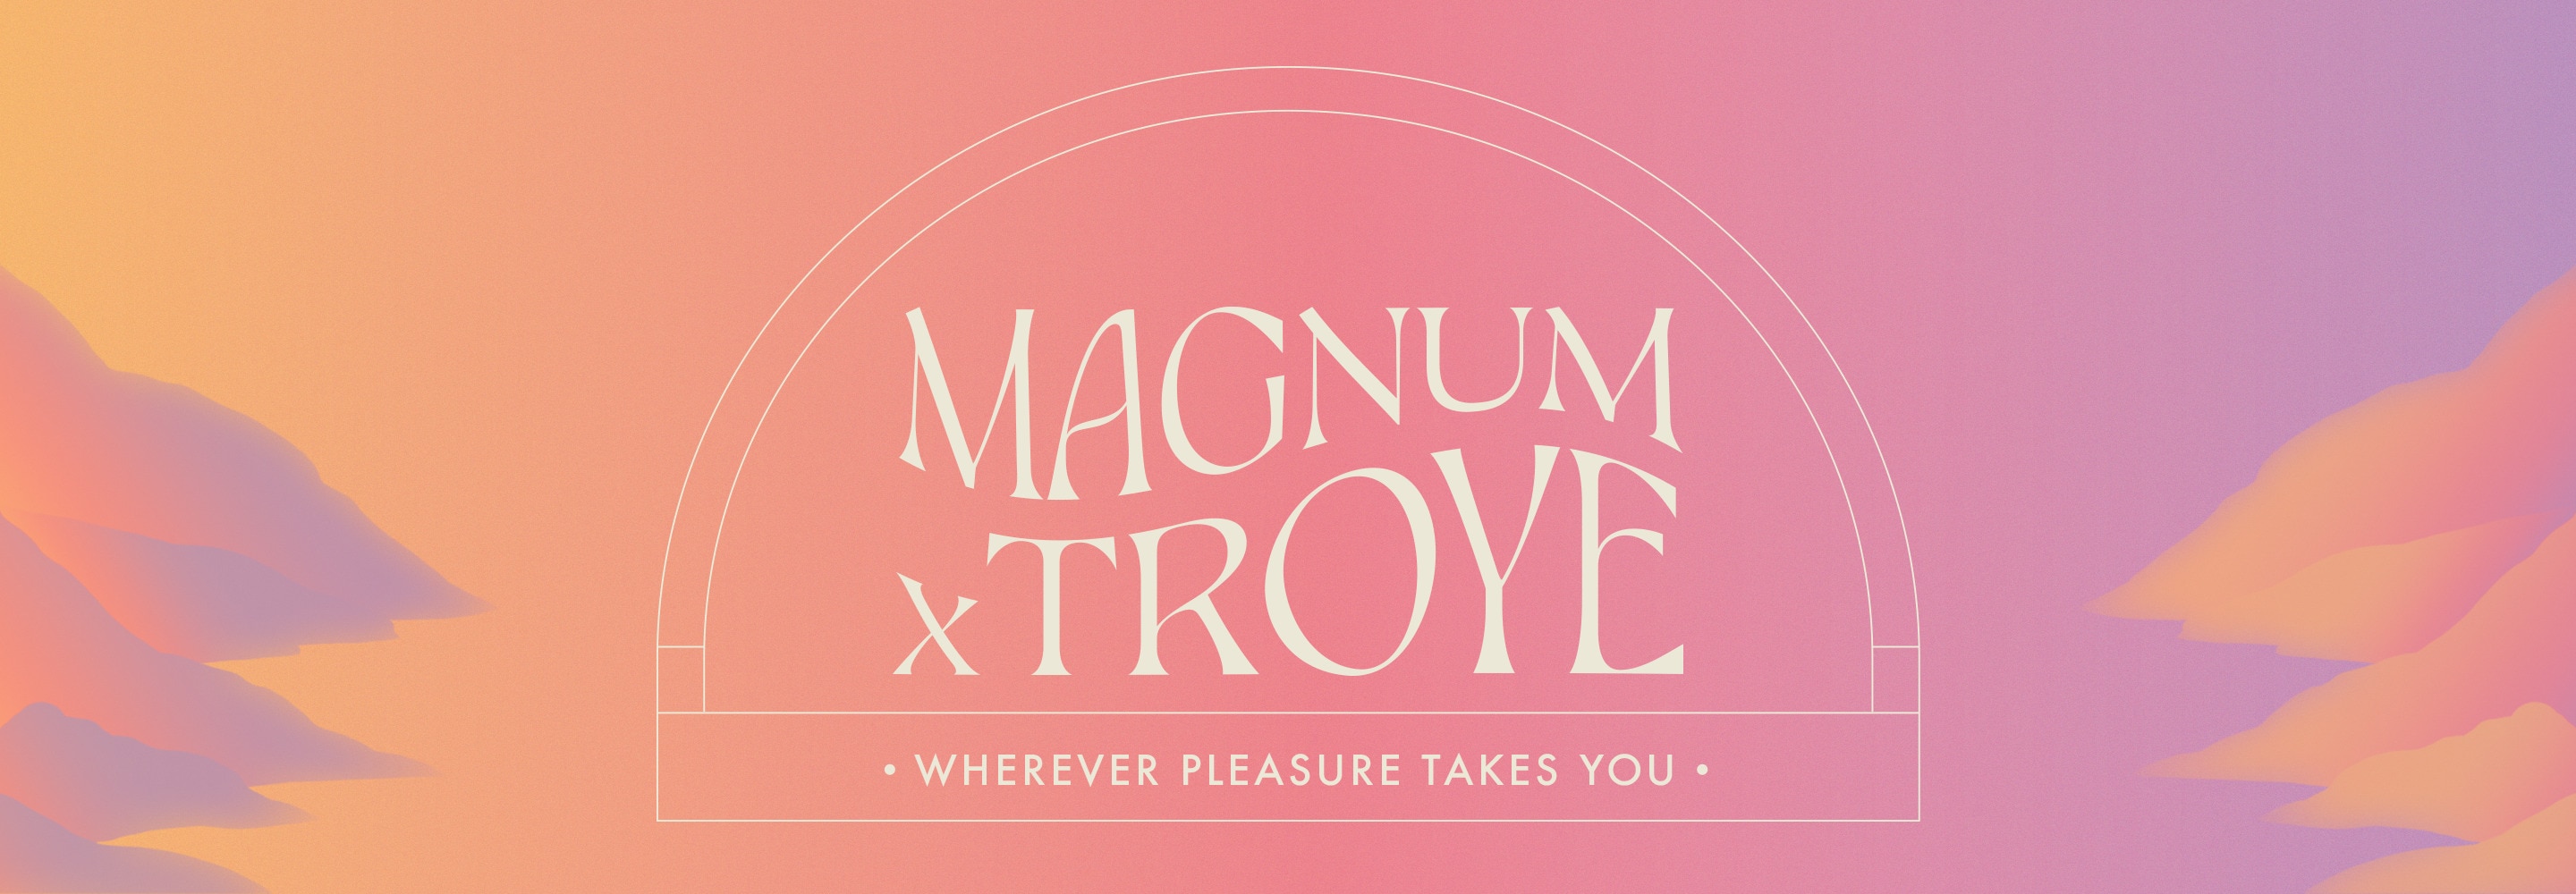 título ondulado gráfico 'Troye x Magnum' dentro de un arco, sublínea 'donde te lleve el placer', rodeado de ilustraciones de montañas sobre fondo rosa y morado